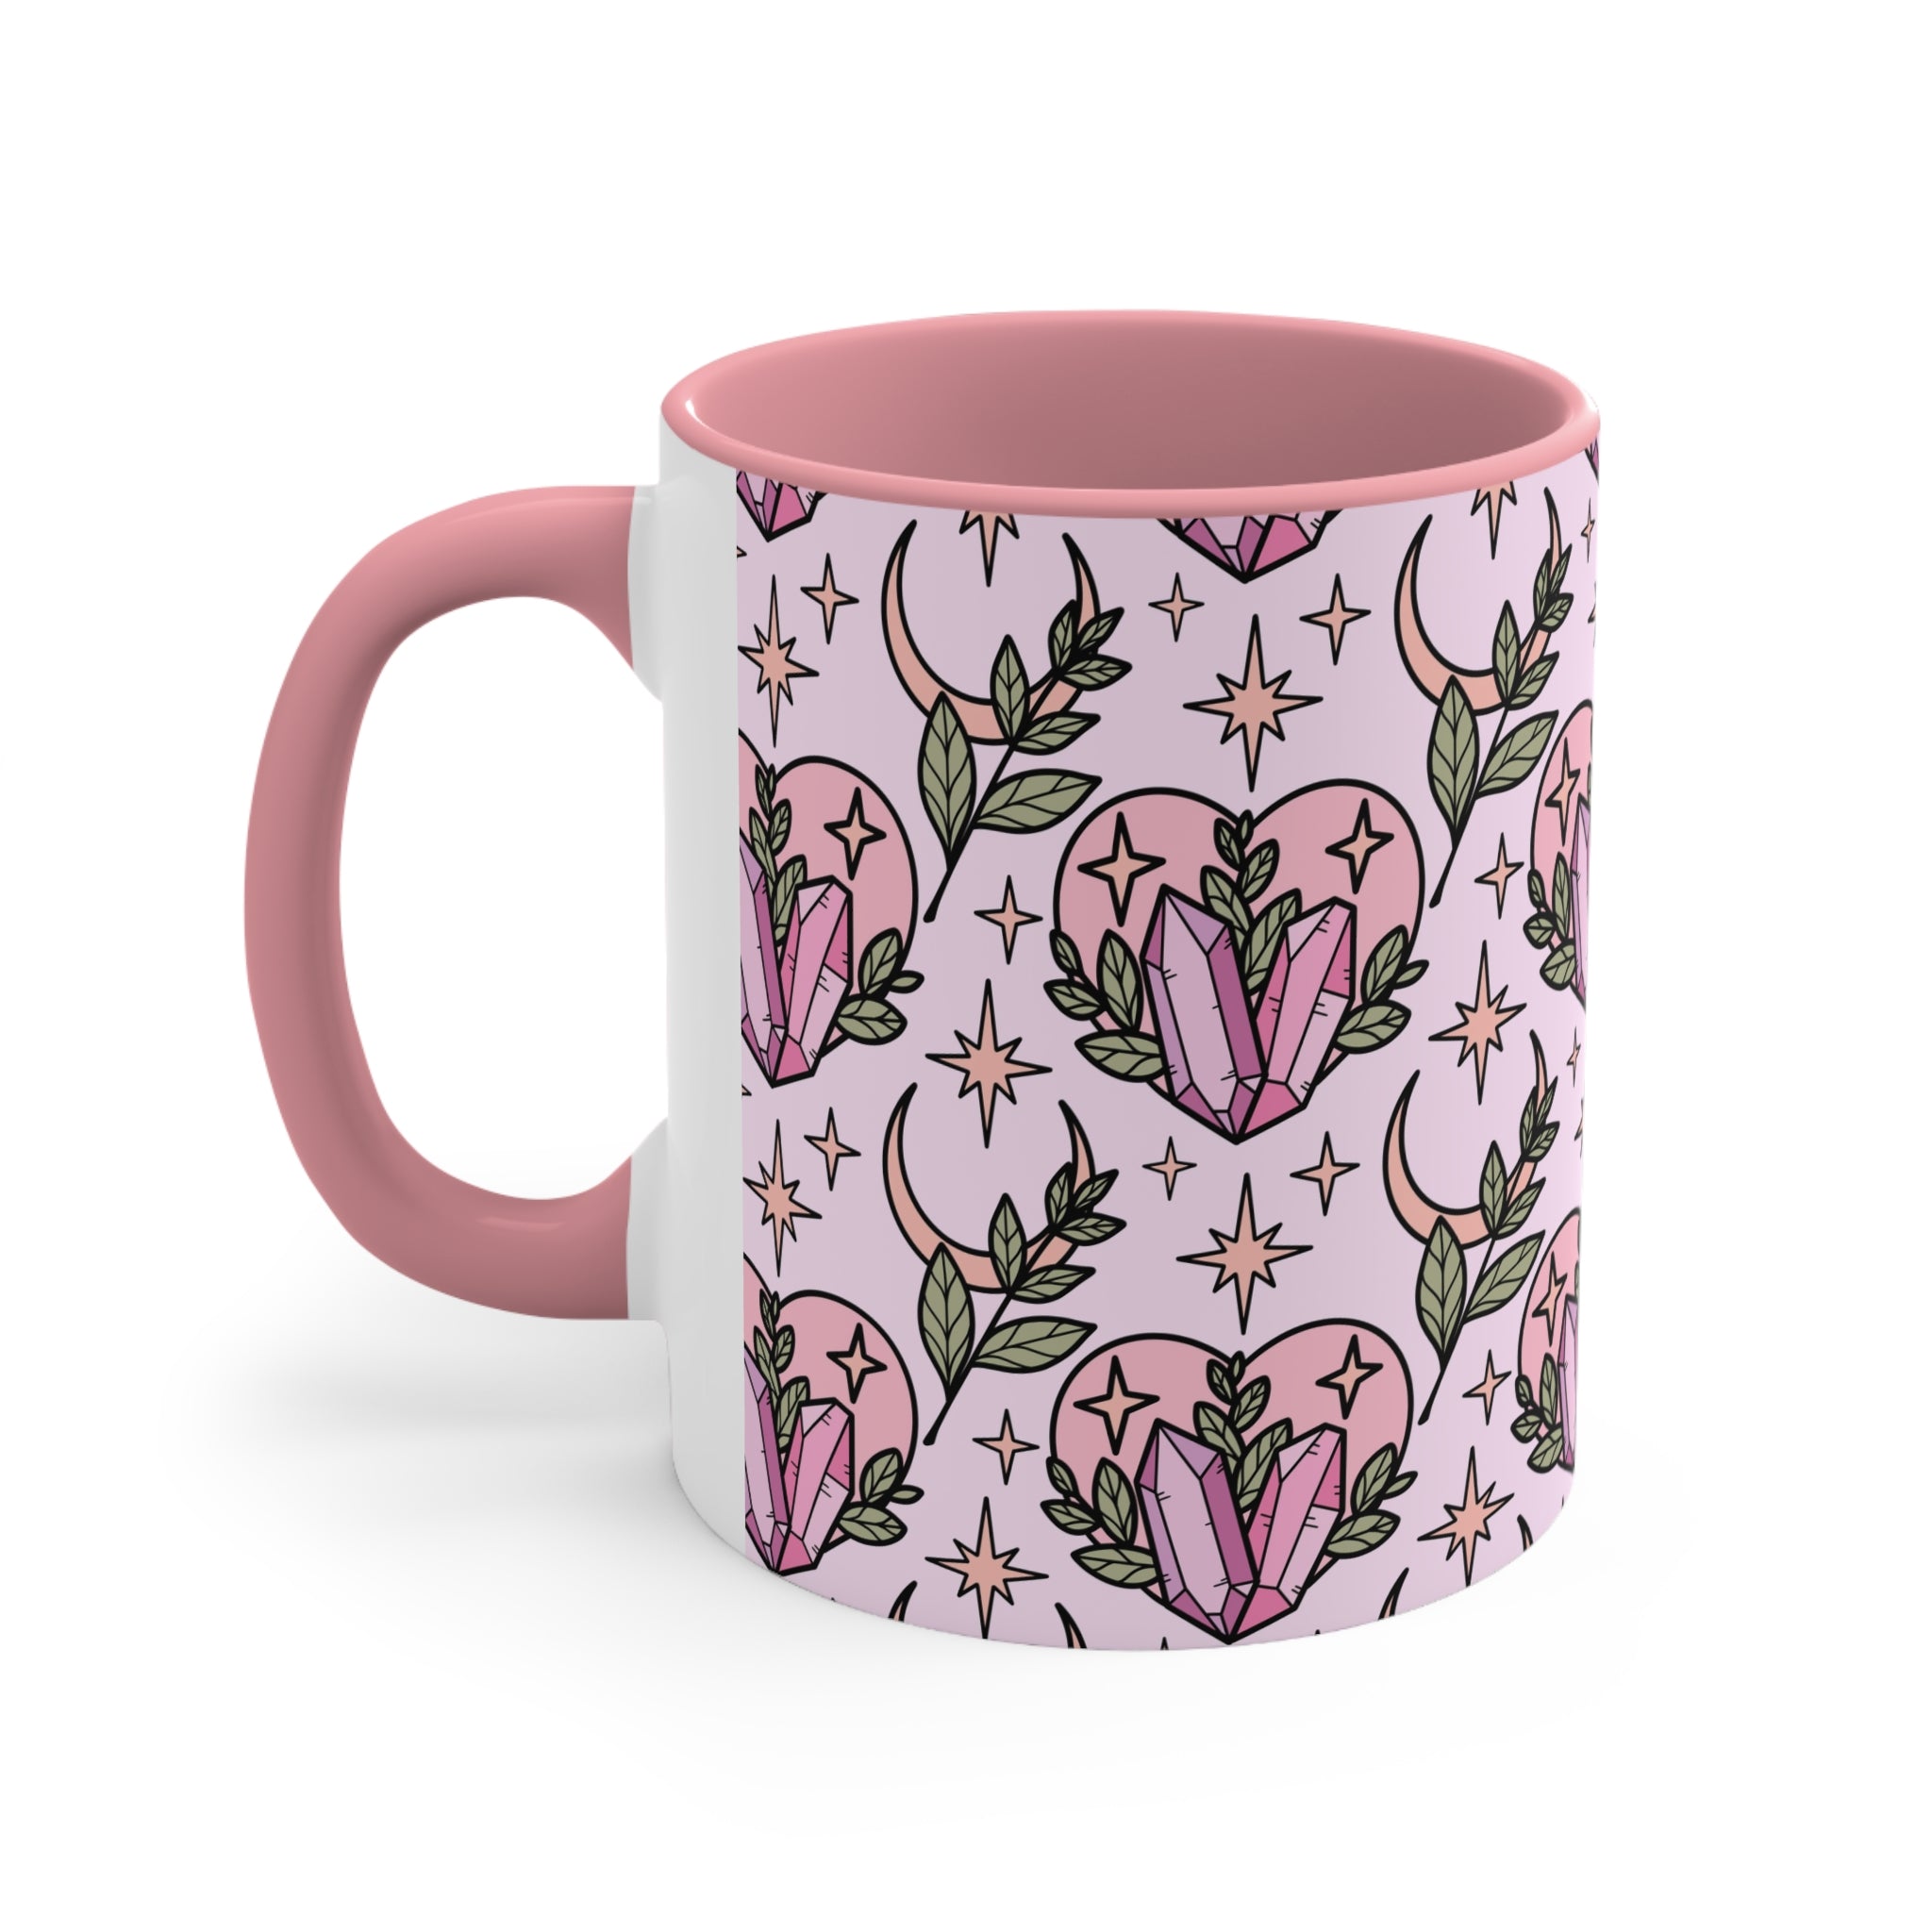 Rose Quartz Coffee Mug